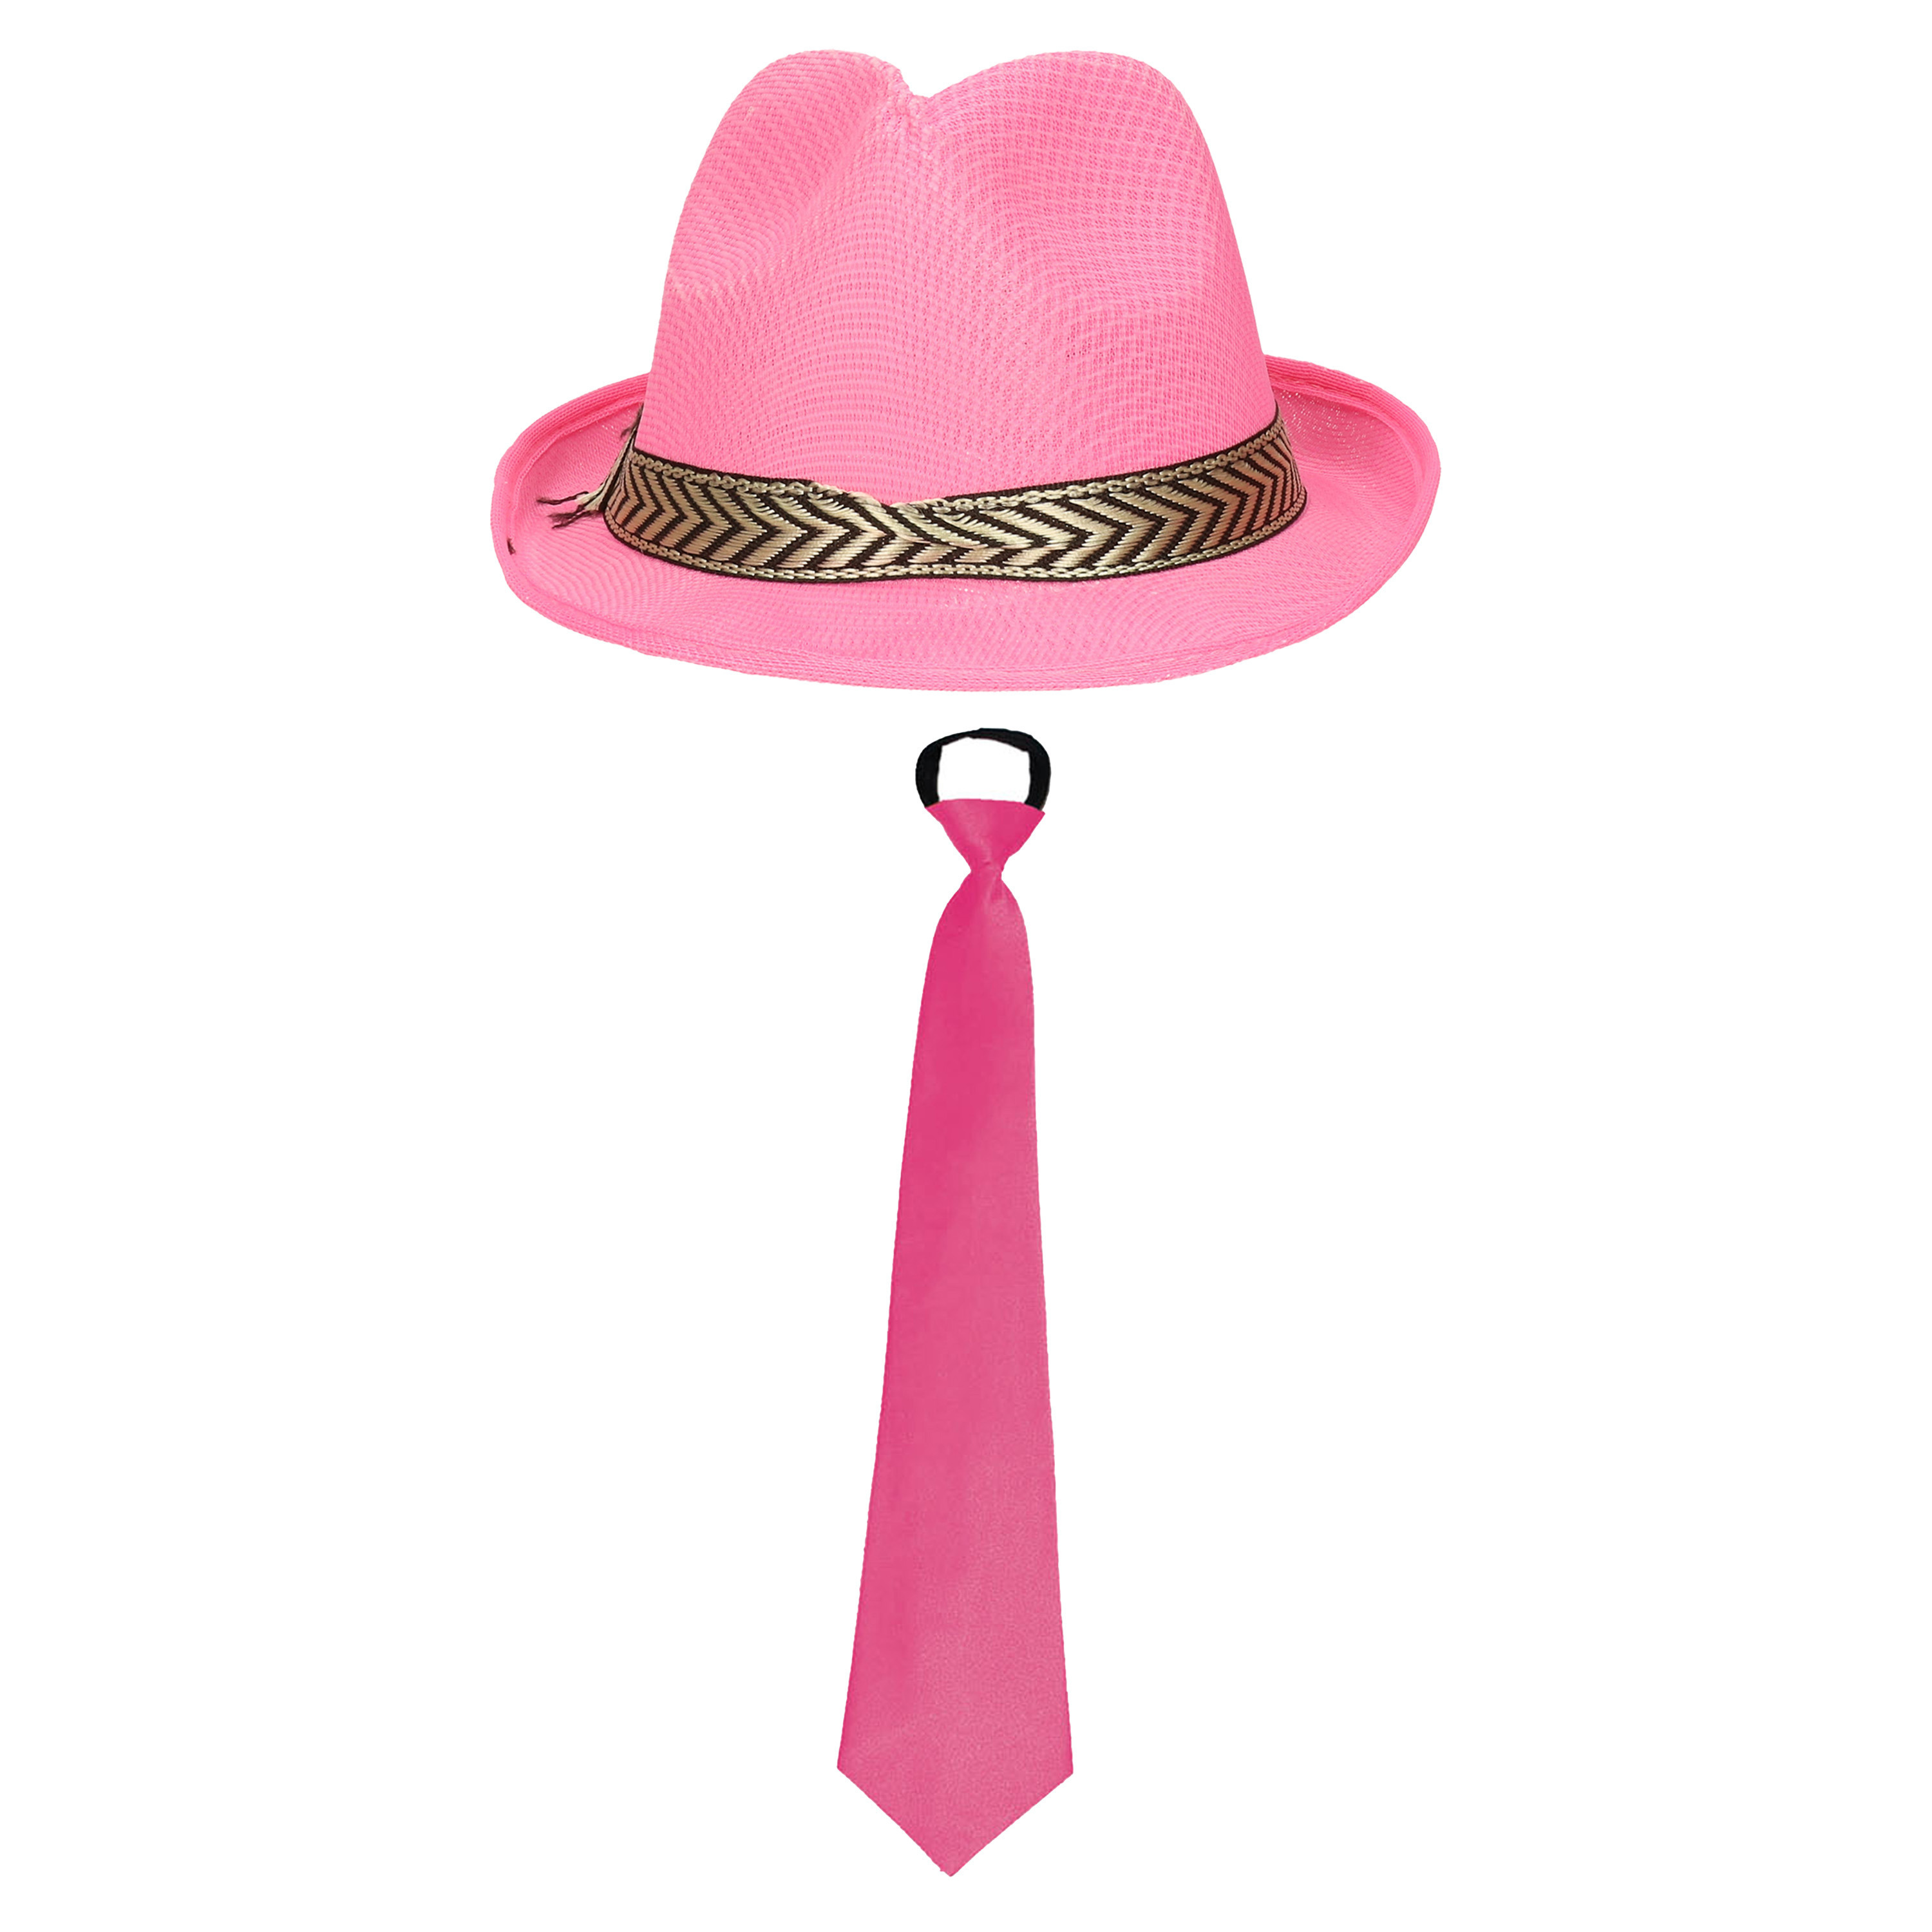 Toppers Carnaval verkleedset Pinkman hoed en stropdas roze heren-dames verkleedkleding